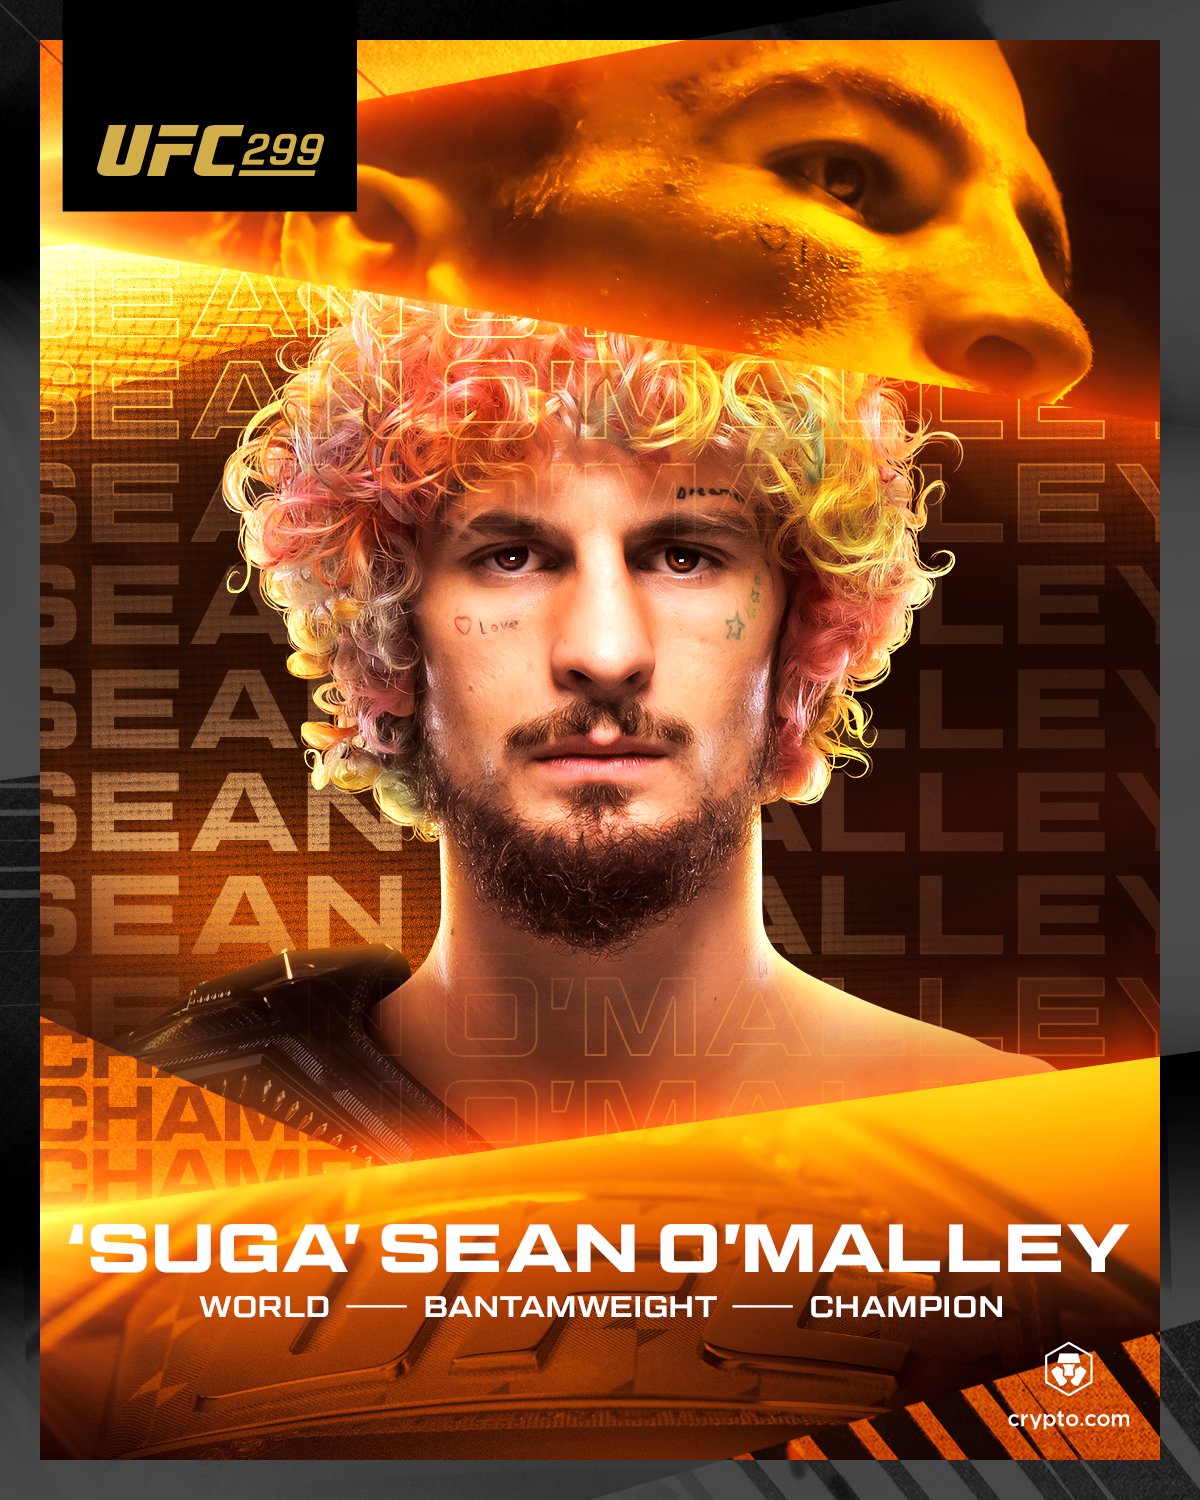 Sean O'Malley manteve o cinturão dos galos (Foto: Divulgação/UFC)